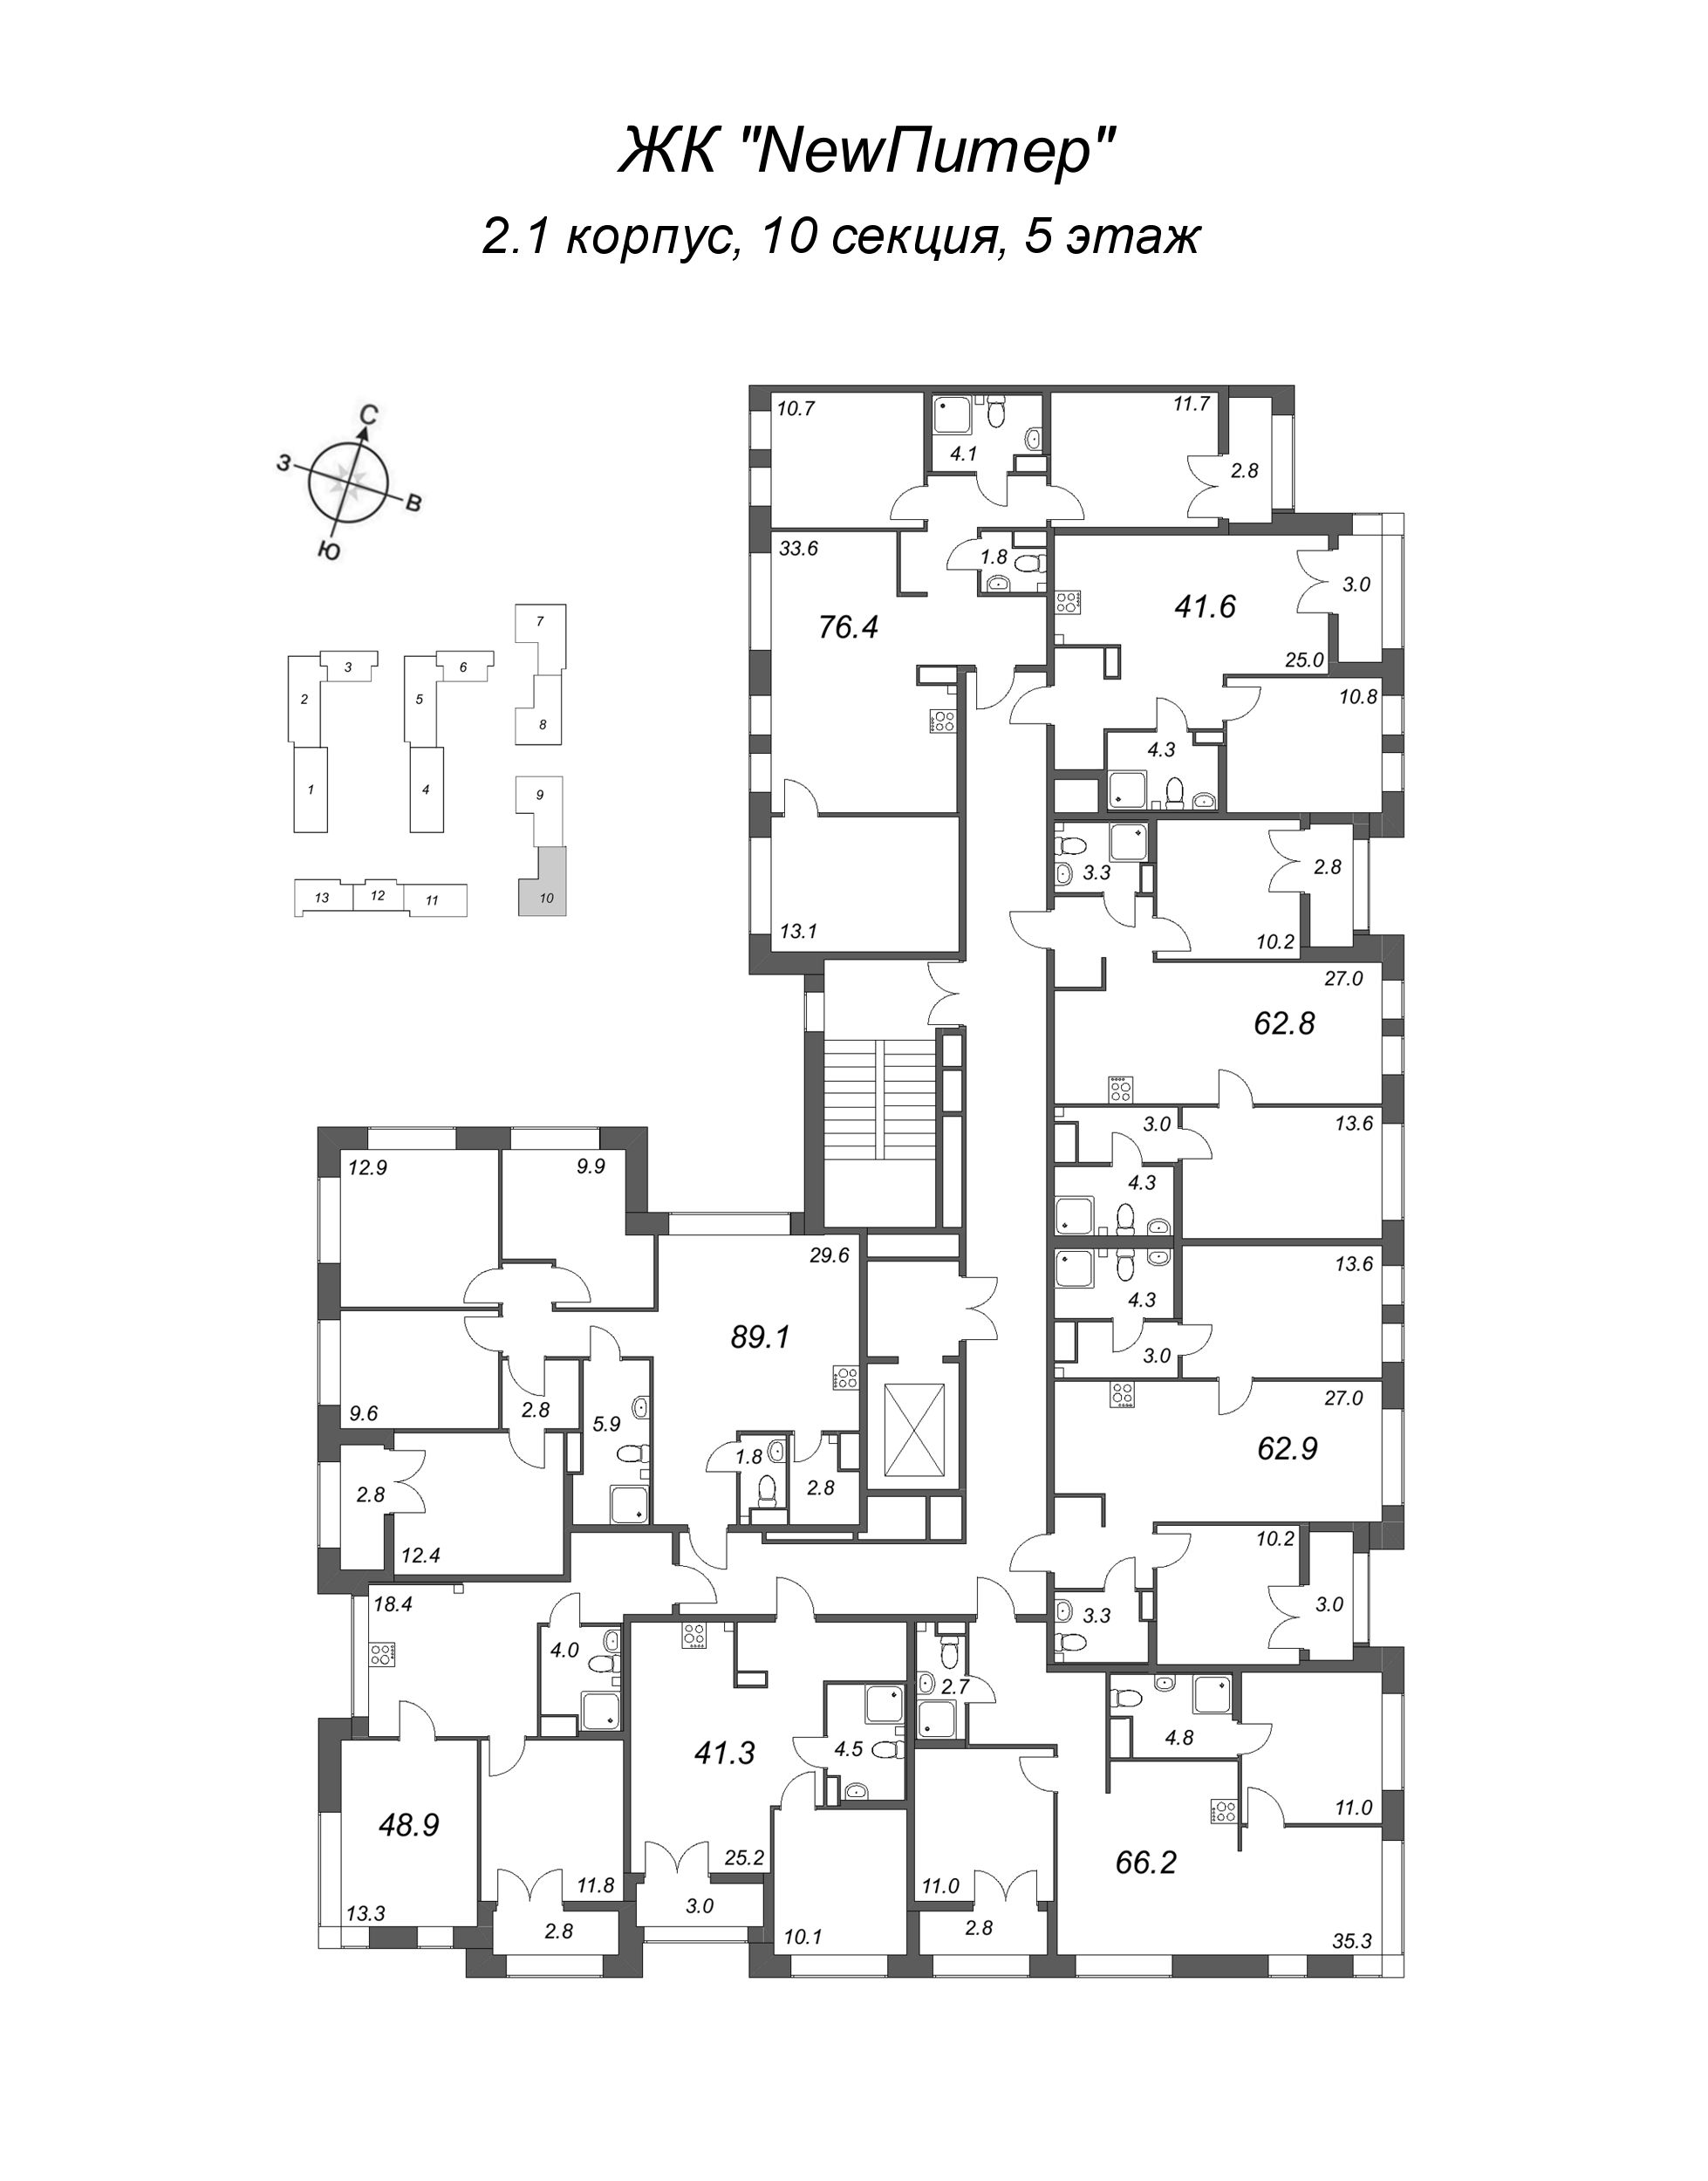 3-комнатная (Евро) квартира, 62.8 м² в ЖК "NewПитер 2.0" - планировка этажа